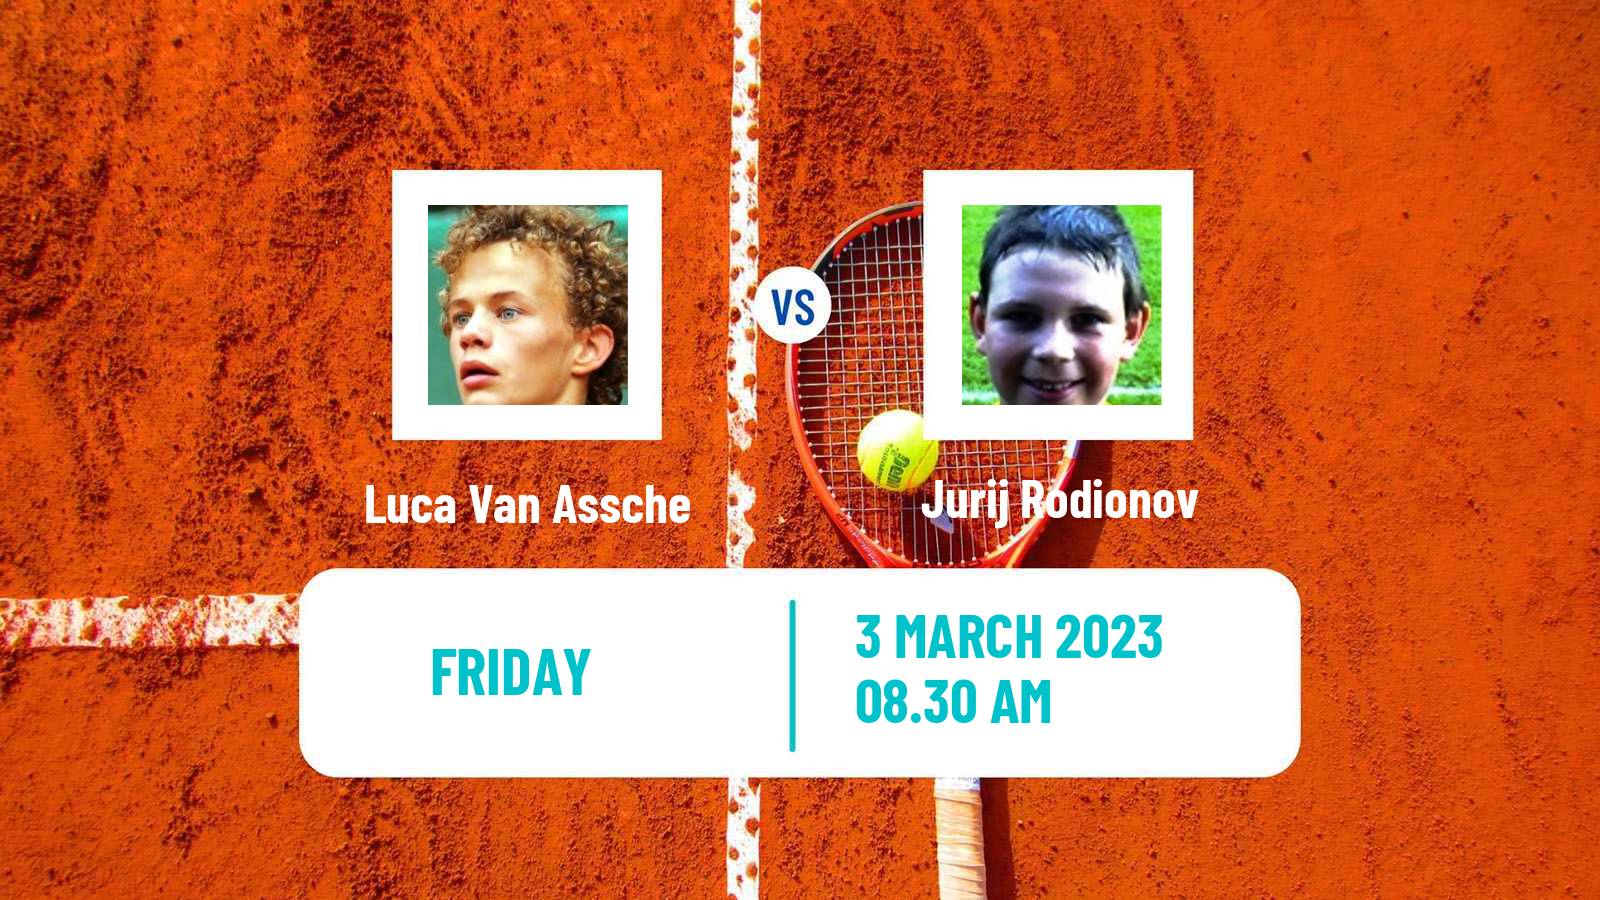 Tennis ATP Challenger Luca Van Assche - Jurij Rodionov